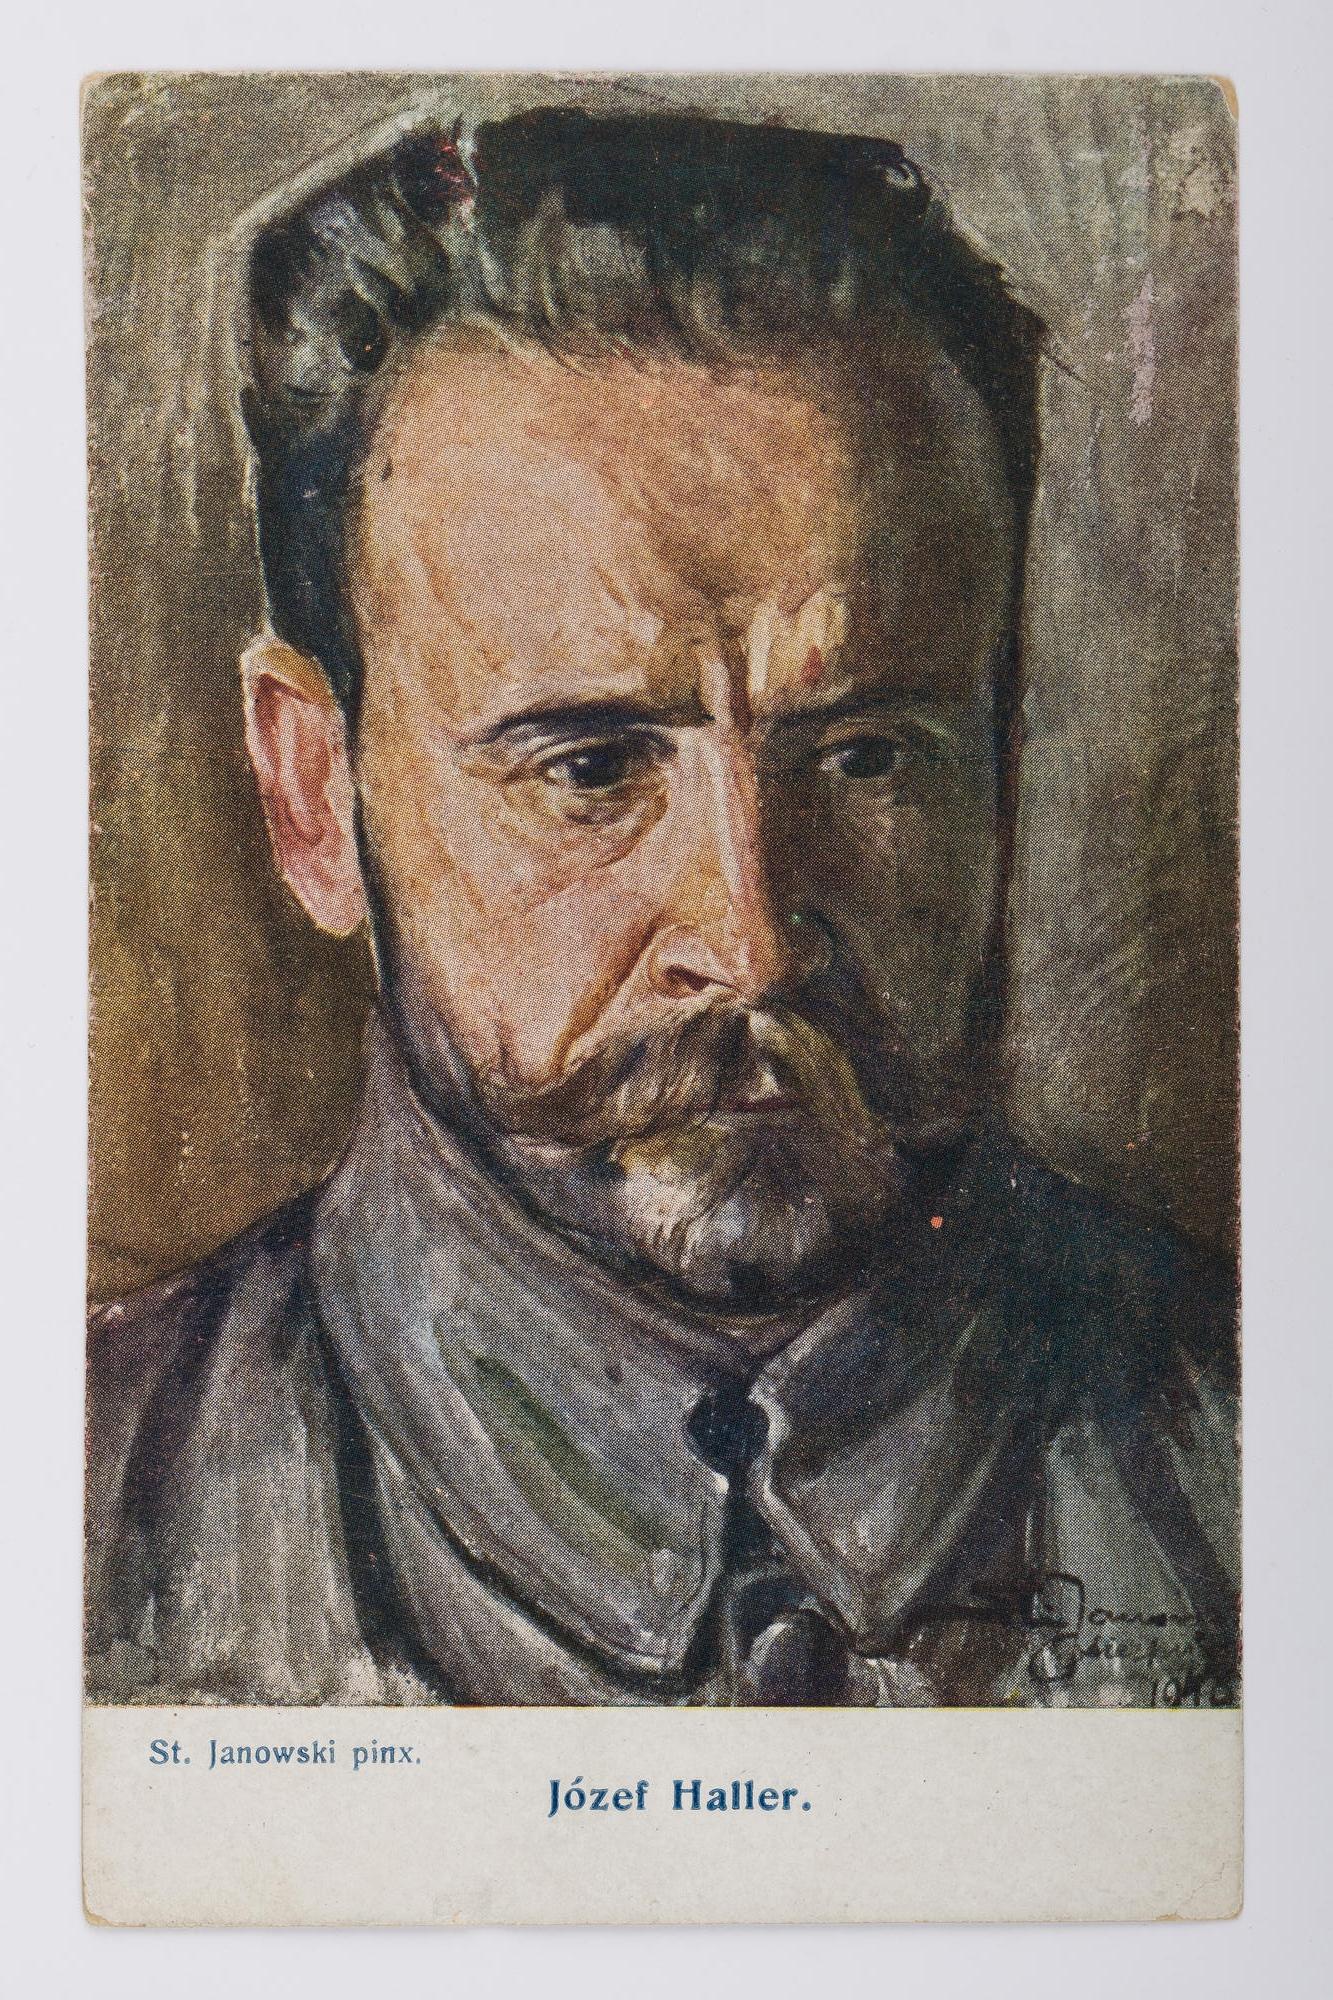 
<span>Karta pocztowa: Portret, Józef Haller</span>
